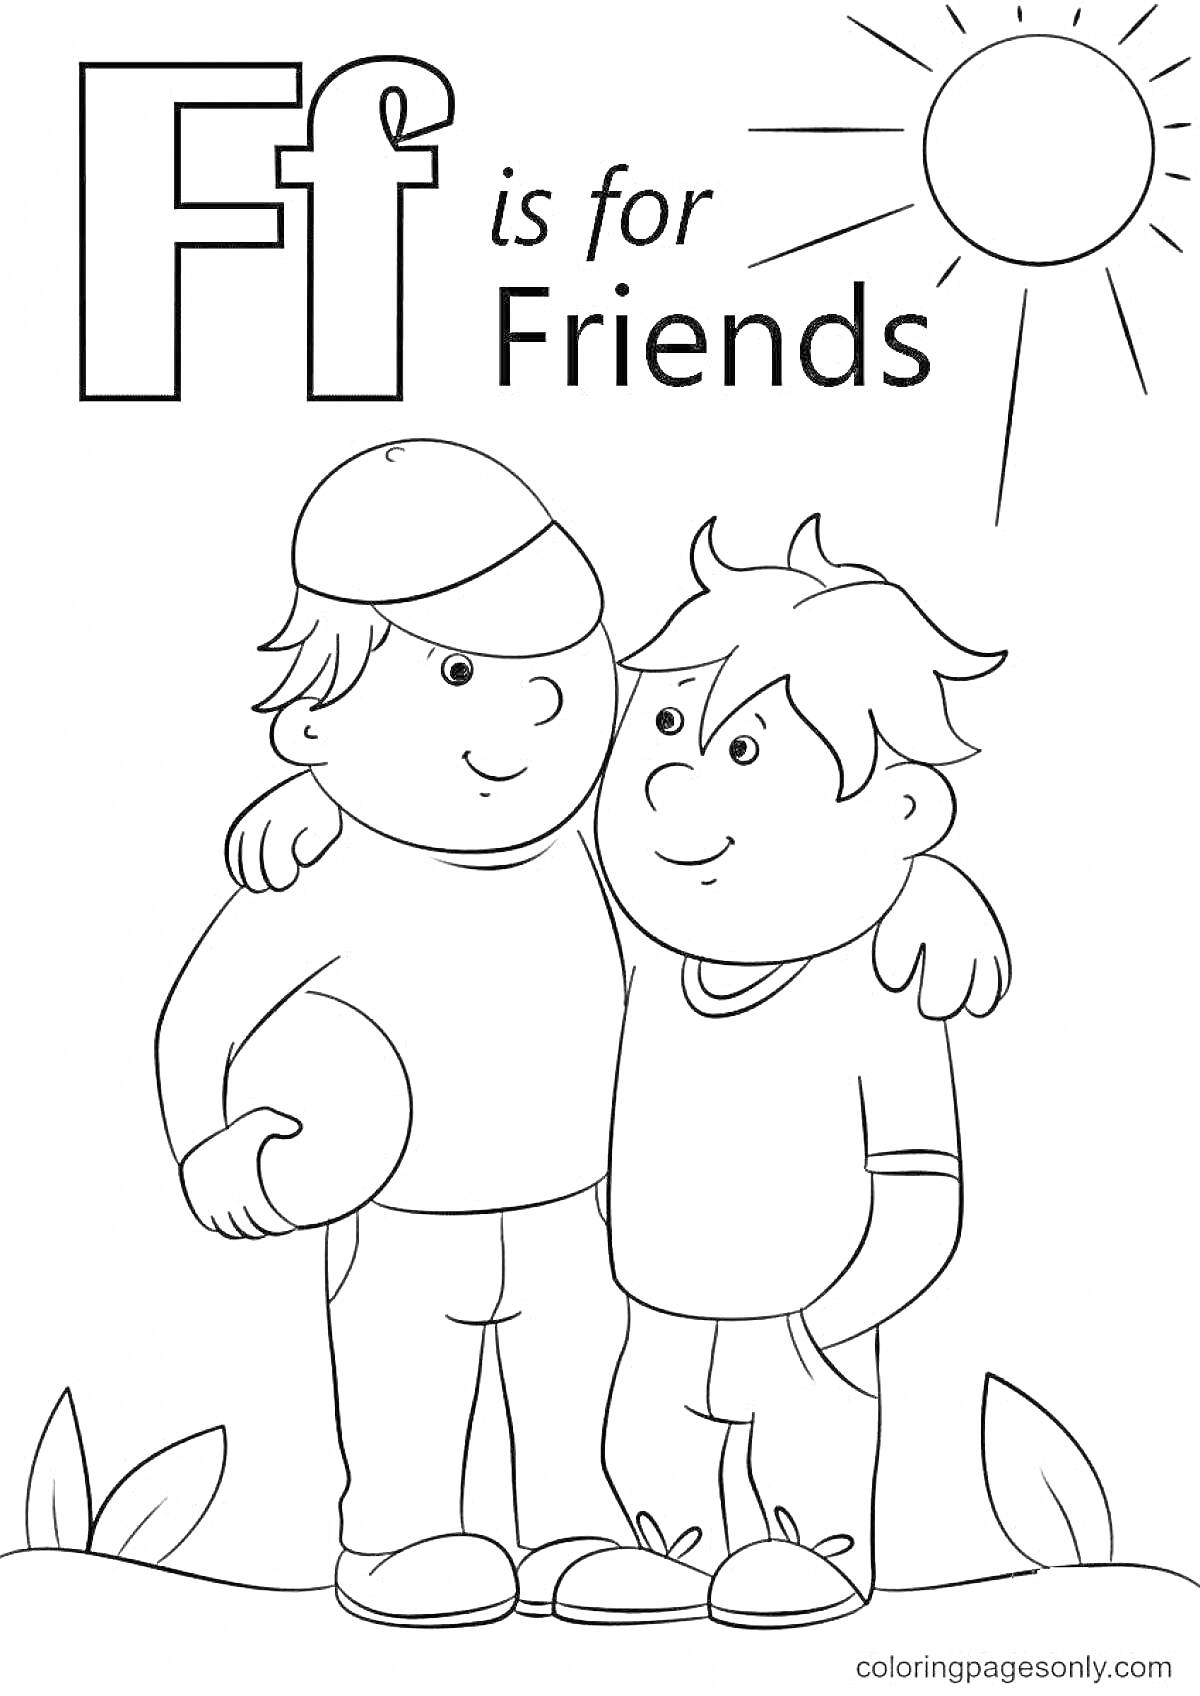 Раскраска F is for Friends, два мальчика, обнимающиеся, один с мячом, солнце, трава